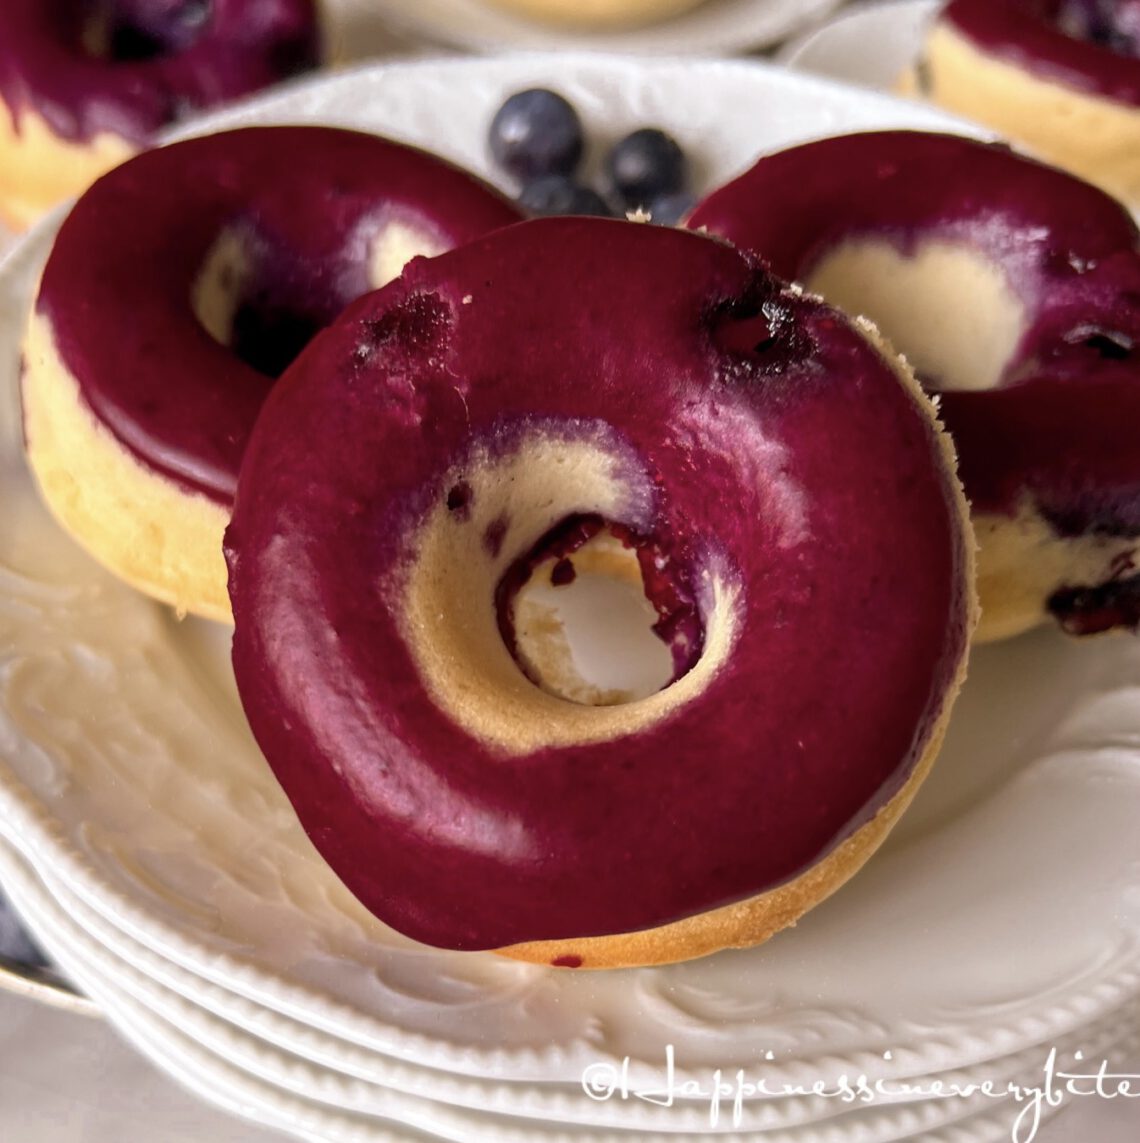 Baked blueberry lemon donuts